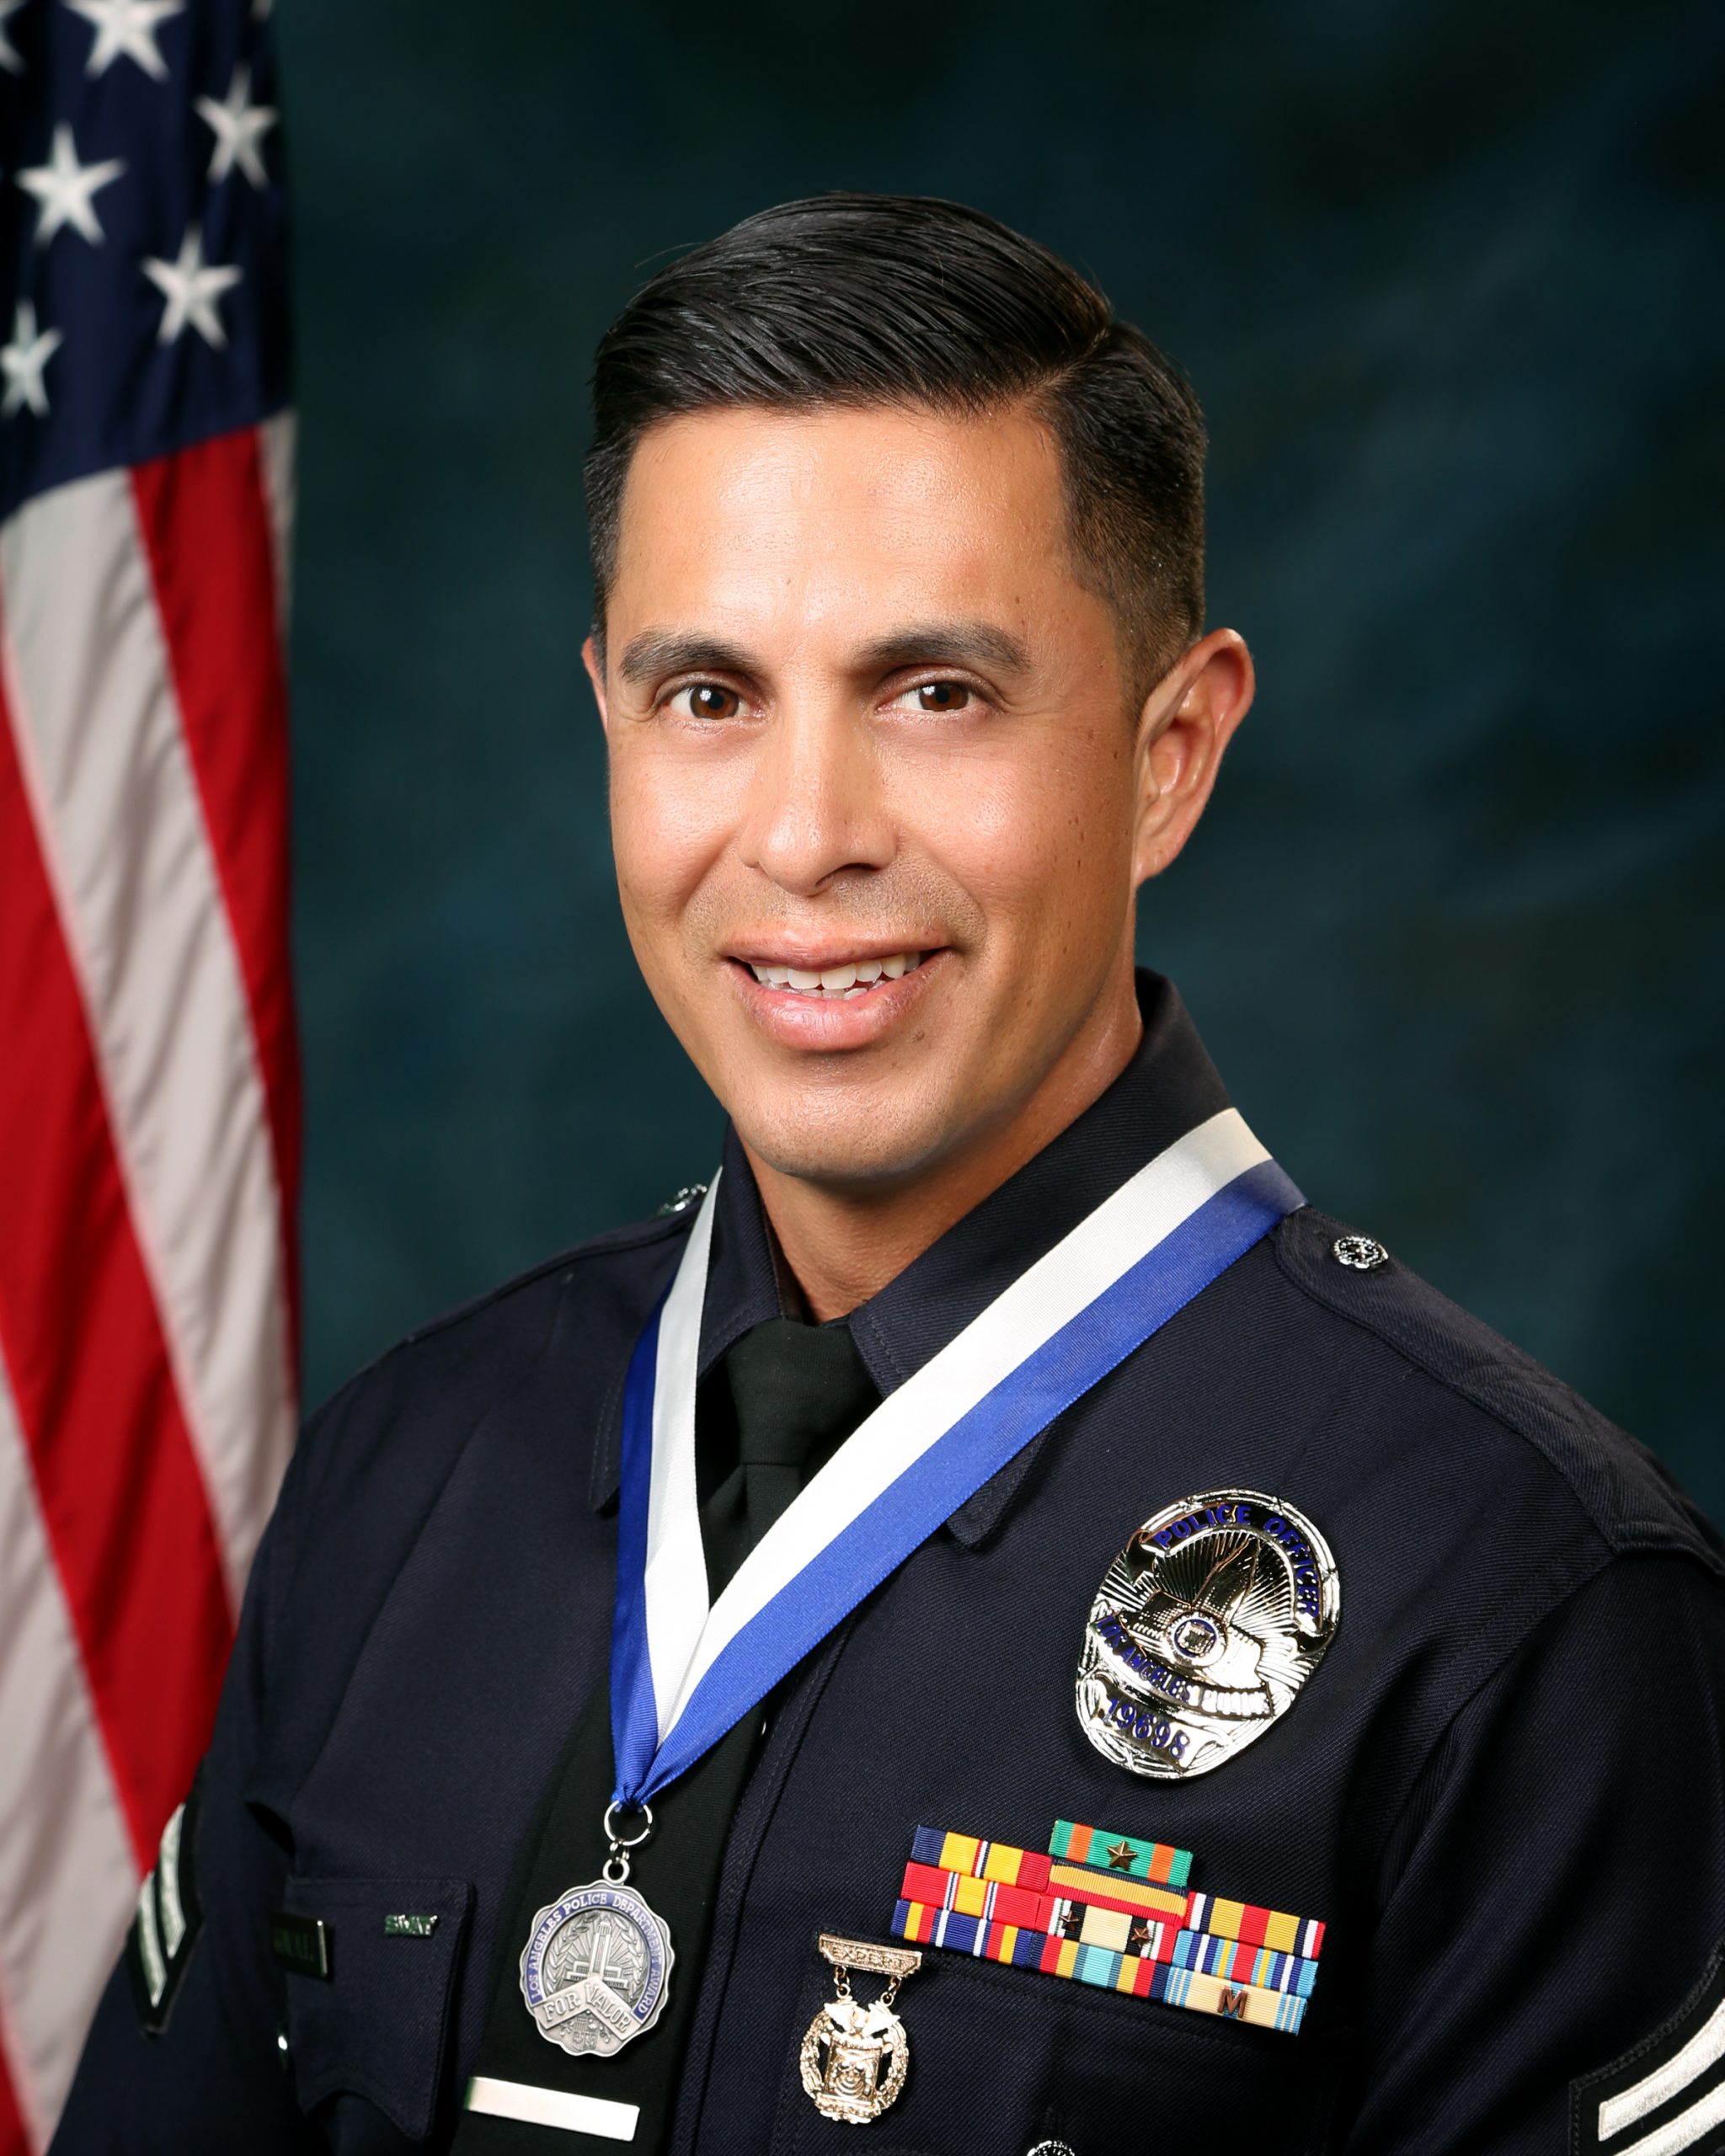 Officer Rene Gonzalez